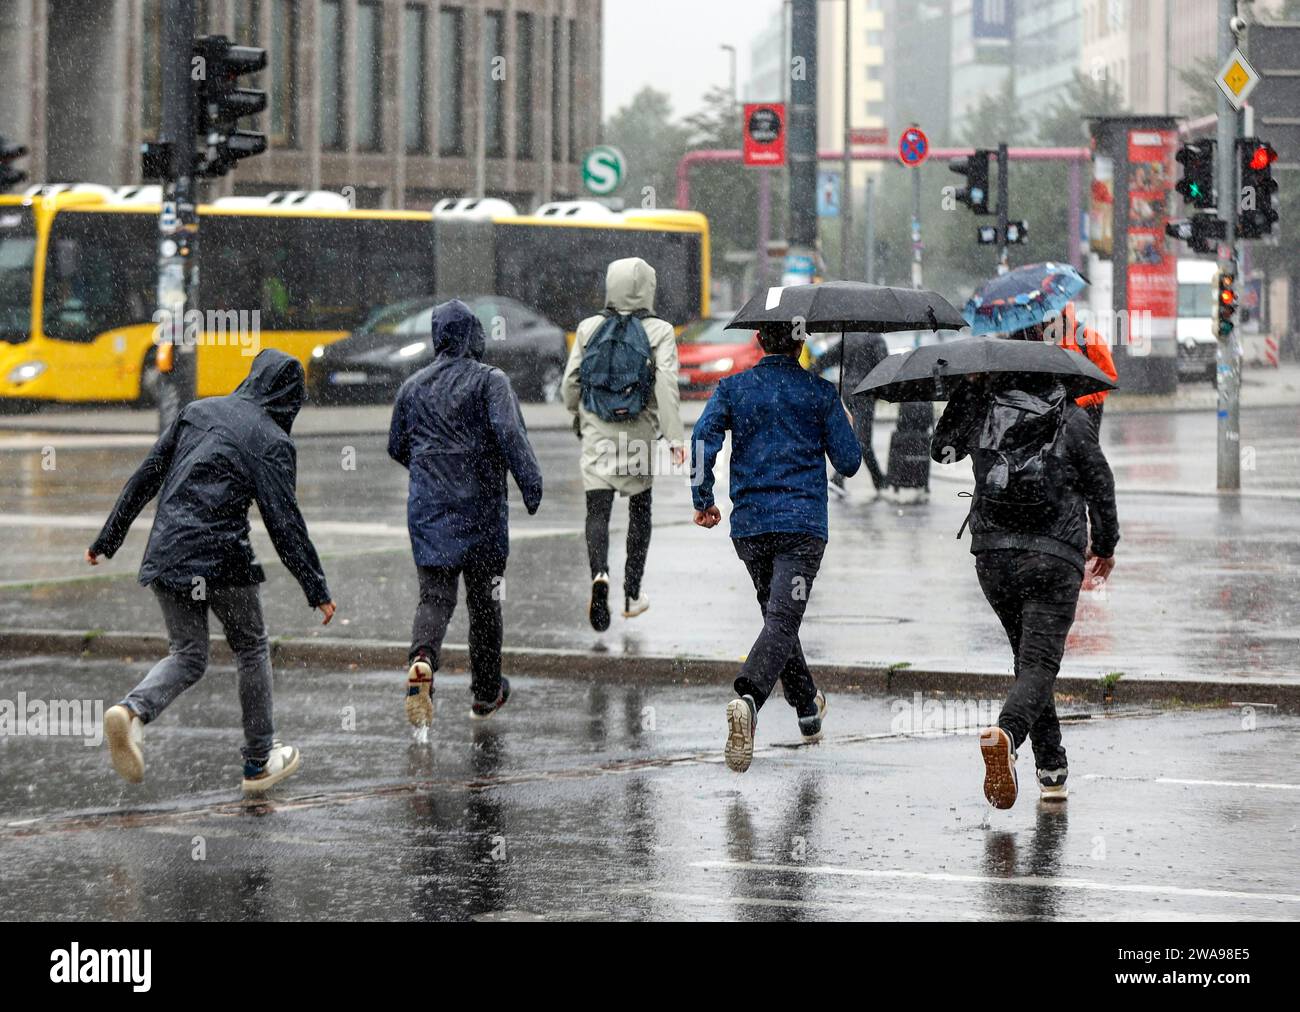 Les gens en tenue de pluie courent dans une rue sous de fortes pluies Berlin, 23 06 2023 Banque D'Images